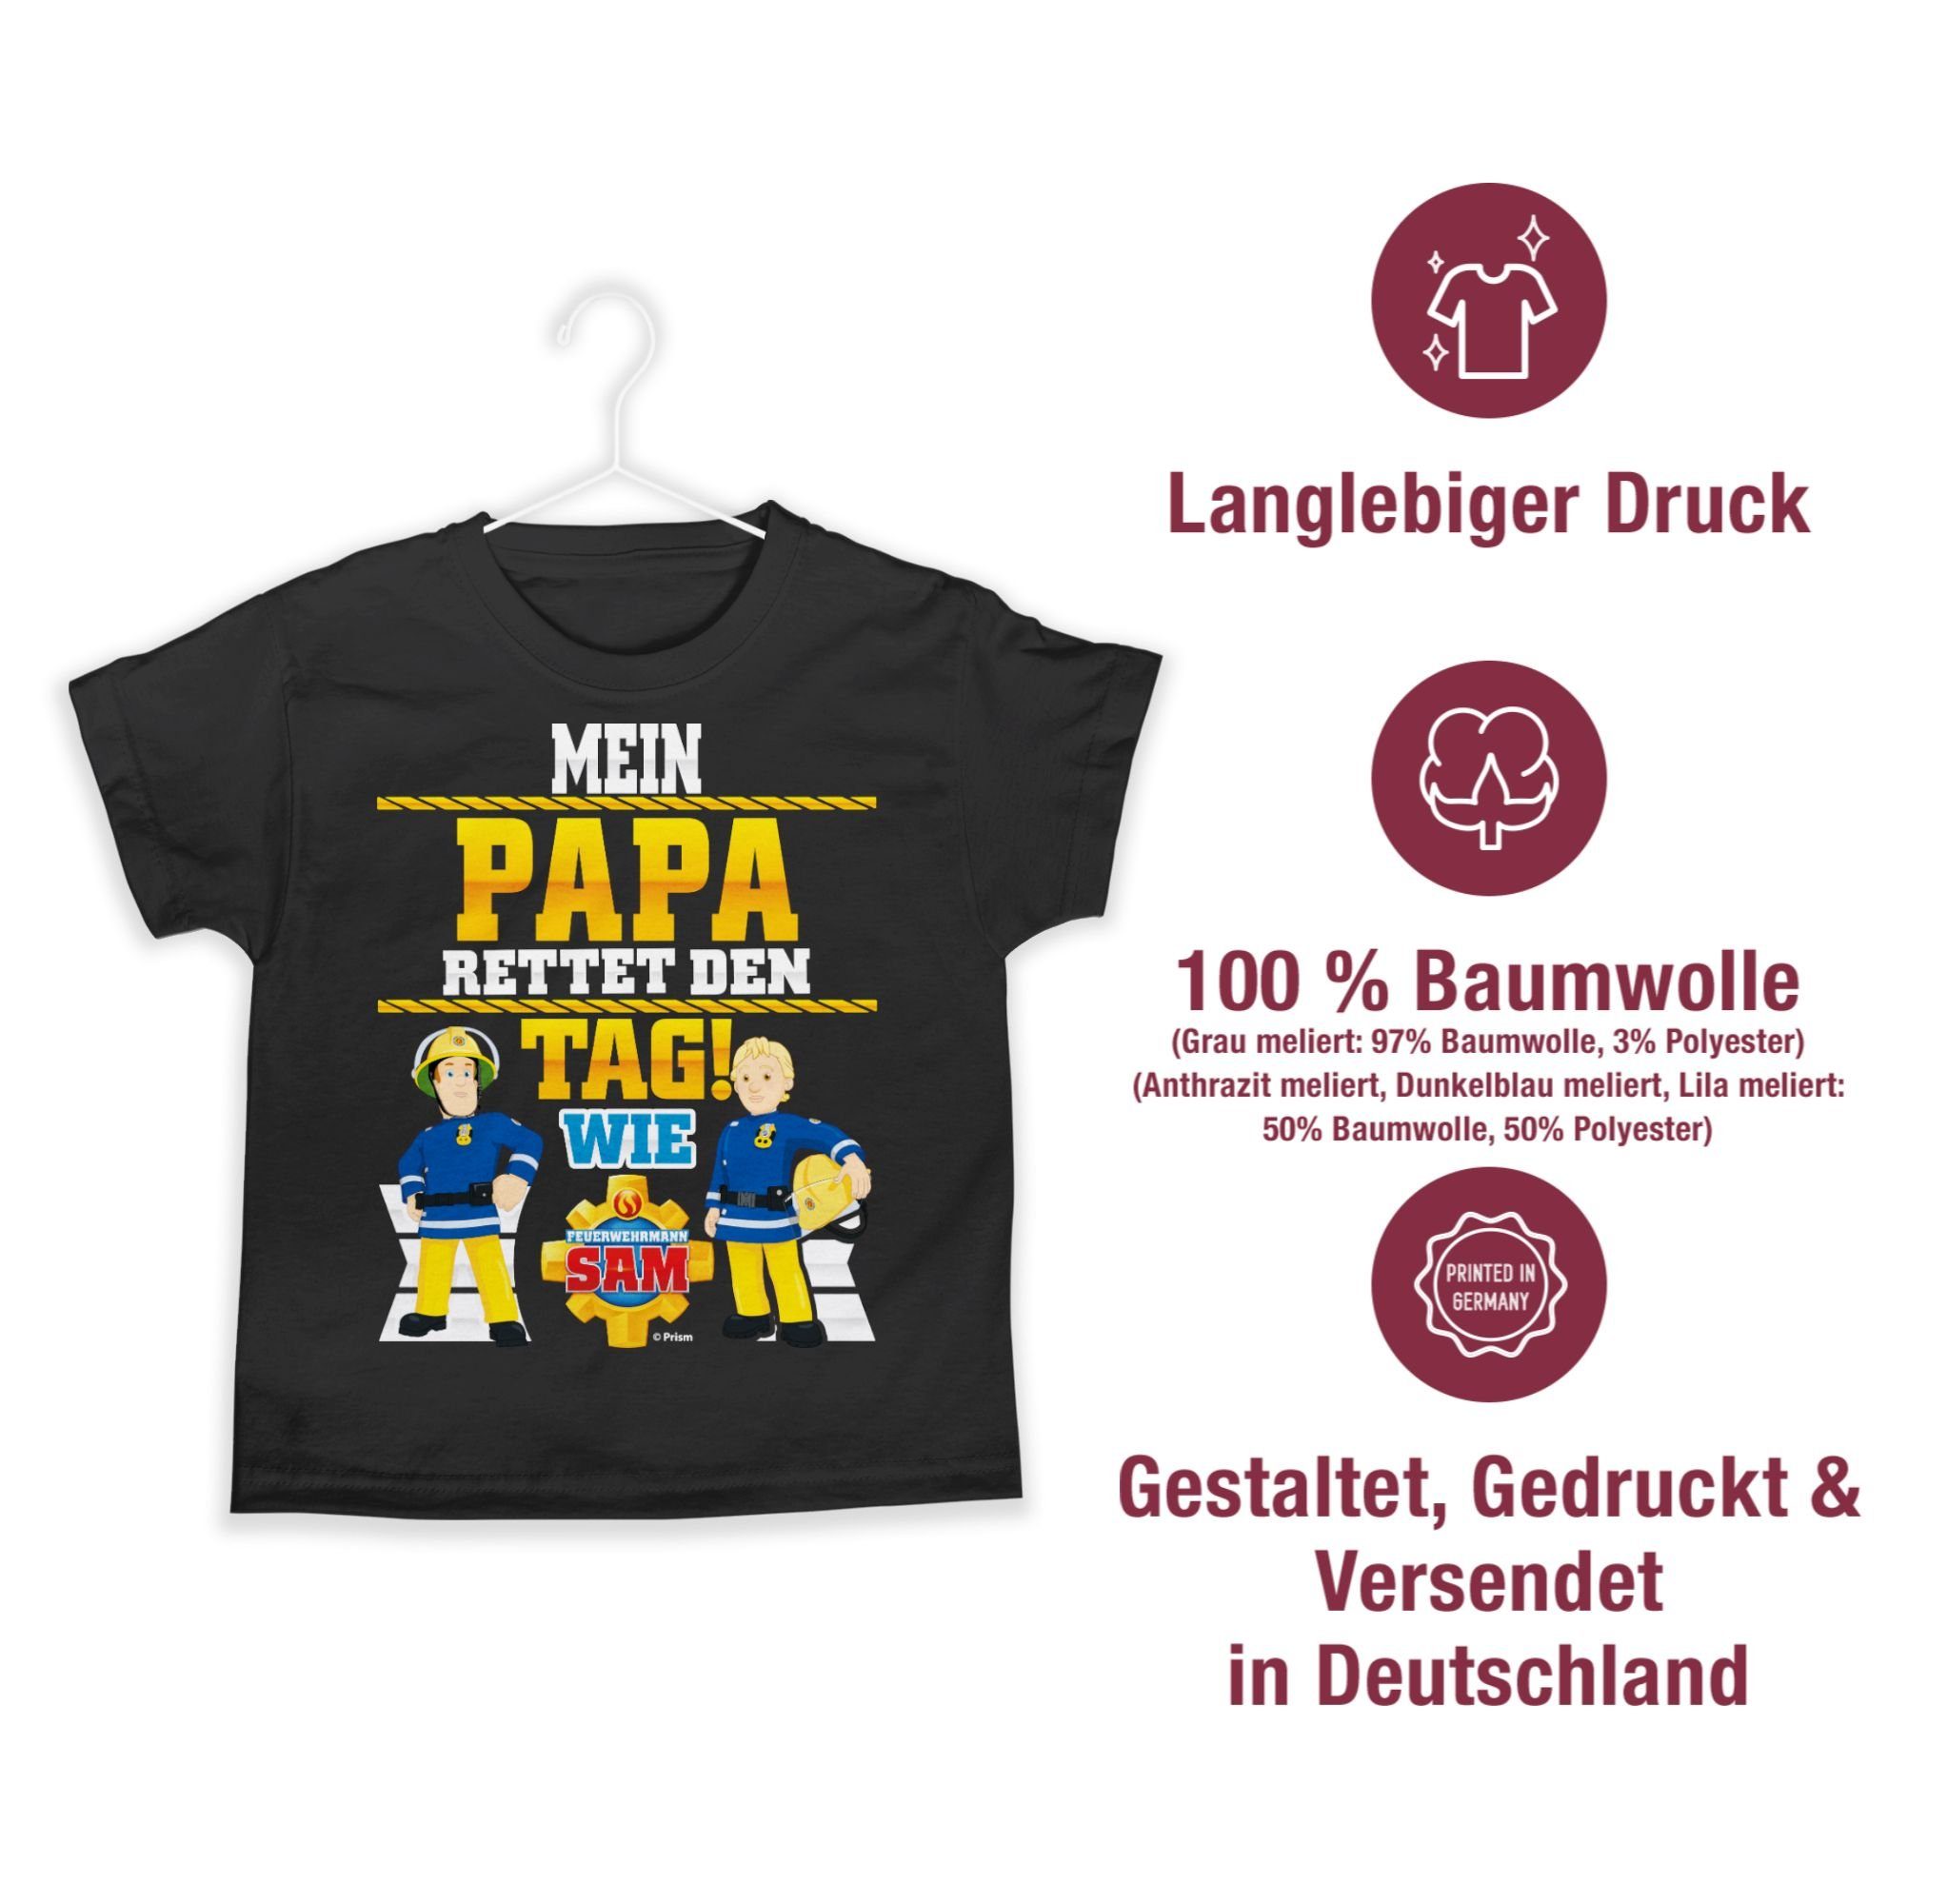 Shirtracer T-Shirt Mein Papa rettet Tag den Penny 02 Schwarz Feuerwehrmann Jungen Sam Sam & wie